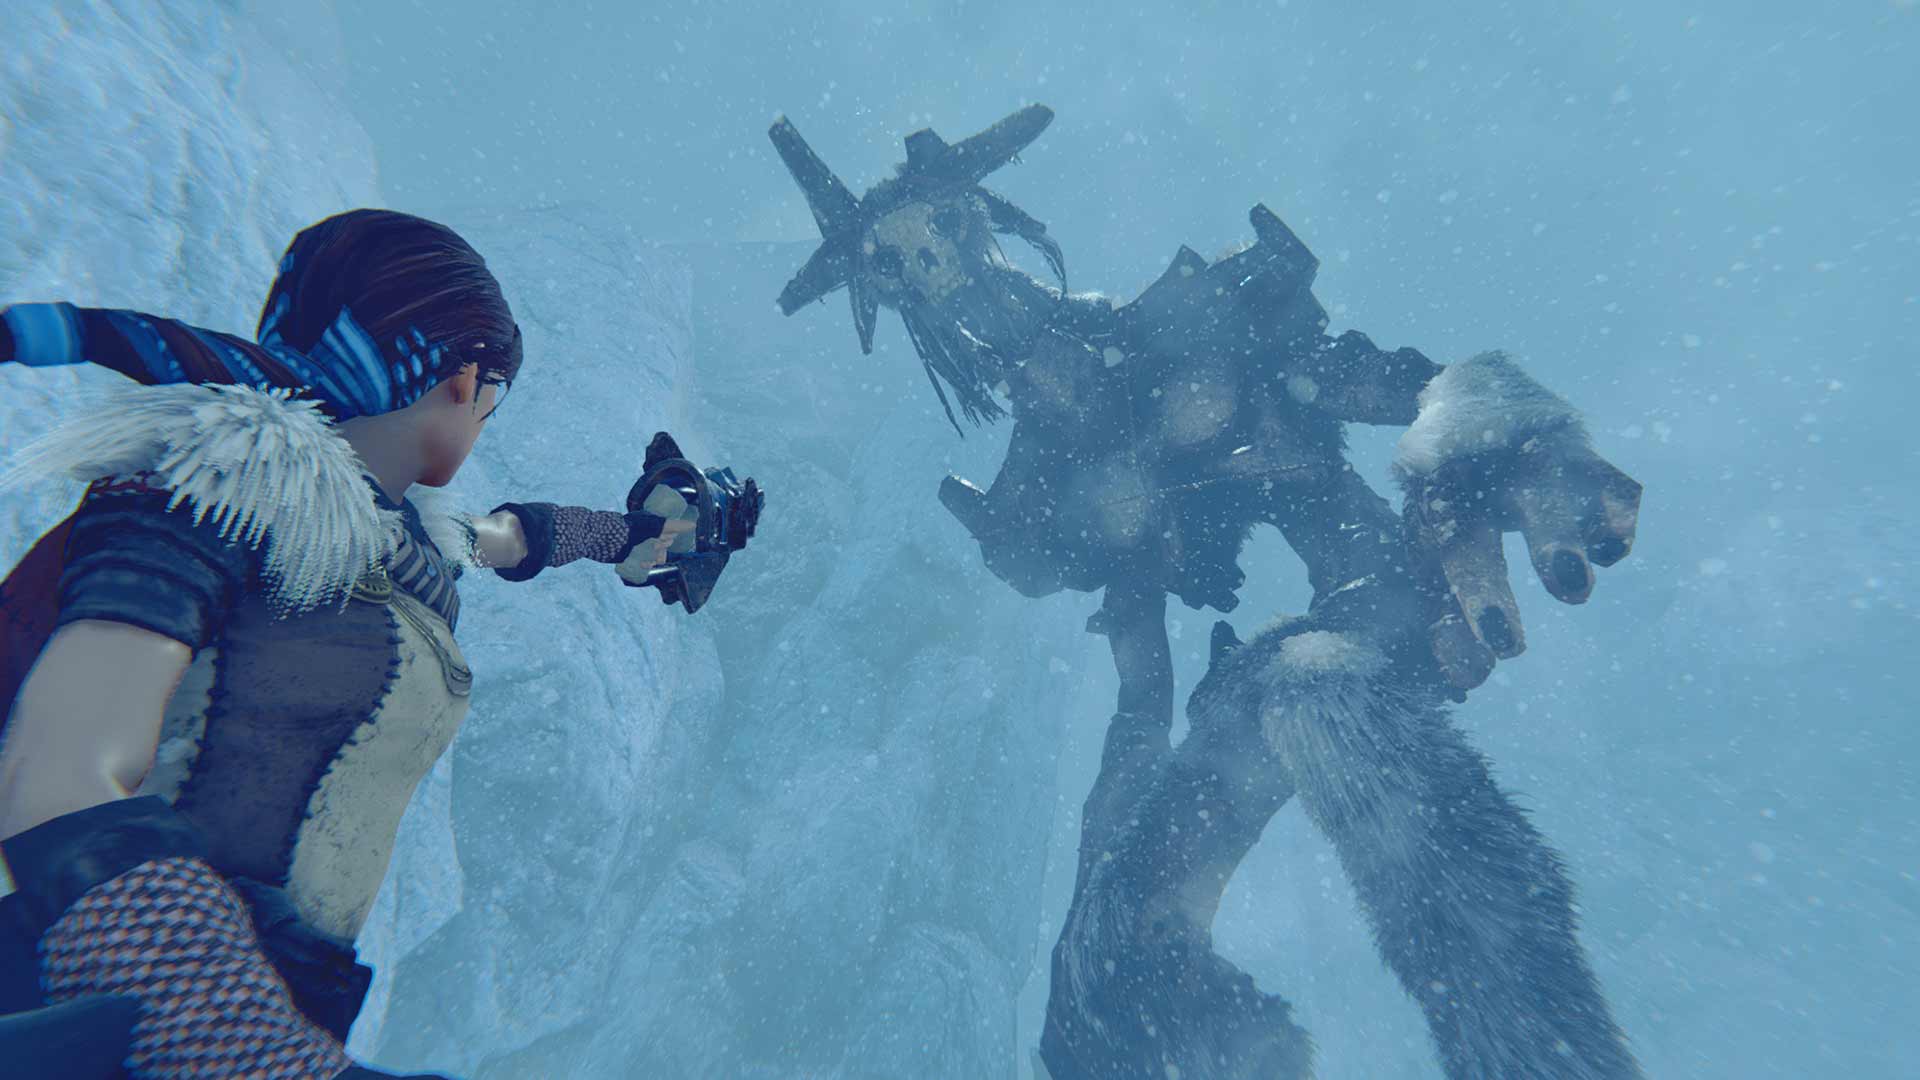 Inspirado em Shadow of the Colossus, Praey for the Gods já está disponível  para Xbox One, PS4 e PC